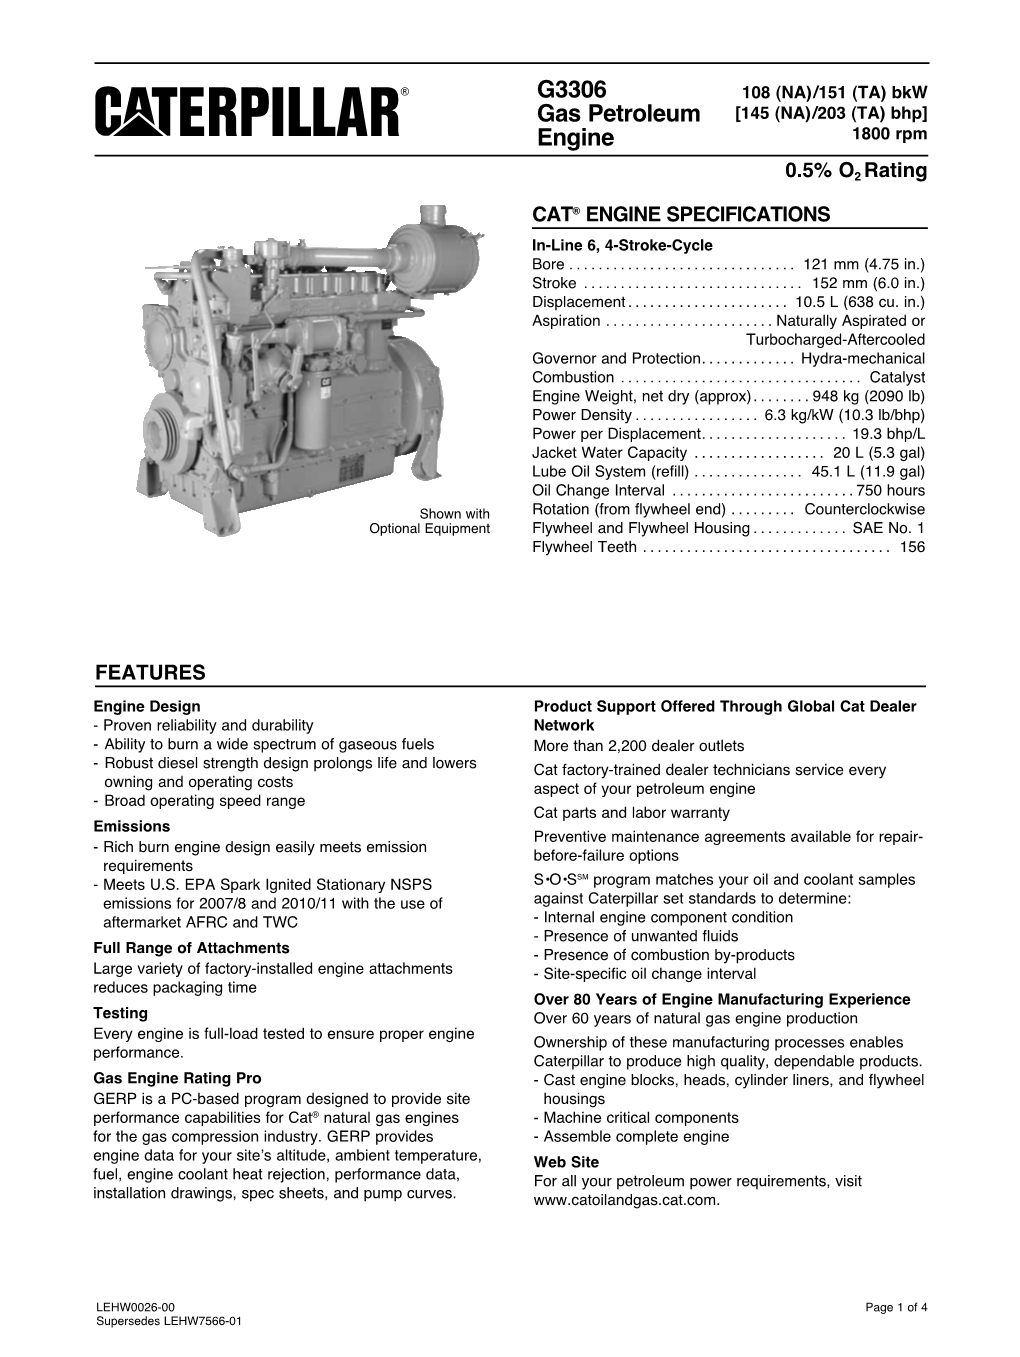 G3306 GAS PETROLEUM ENGINE 108 (NA)/151 (TA) Bkw [145 (NA)/203 (TA) Bhp]